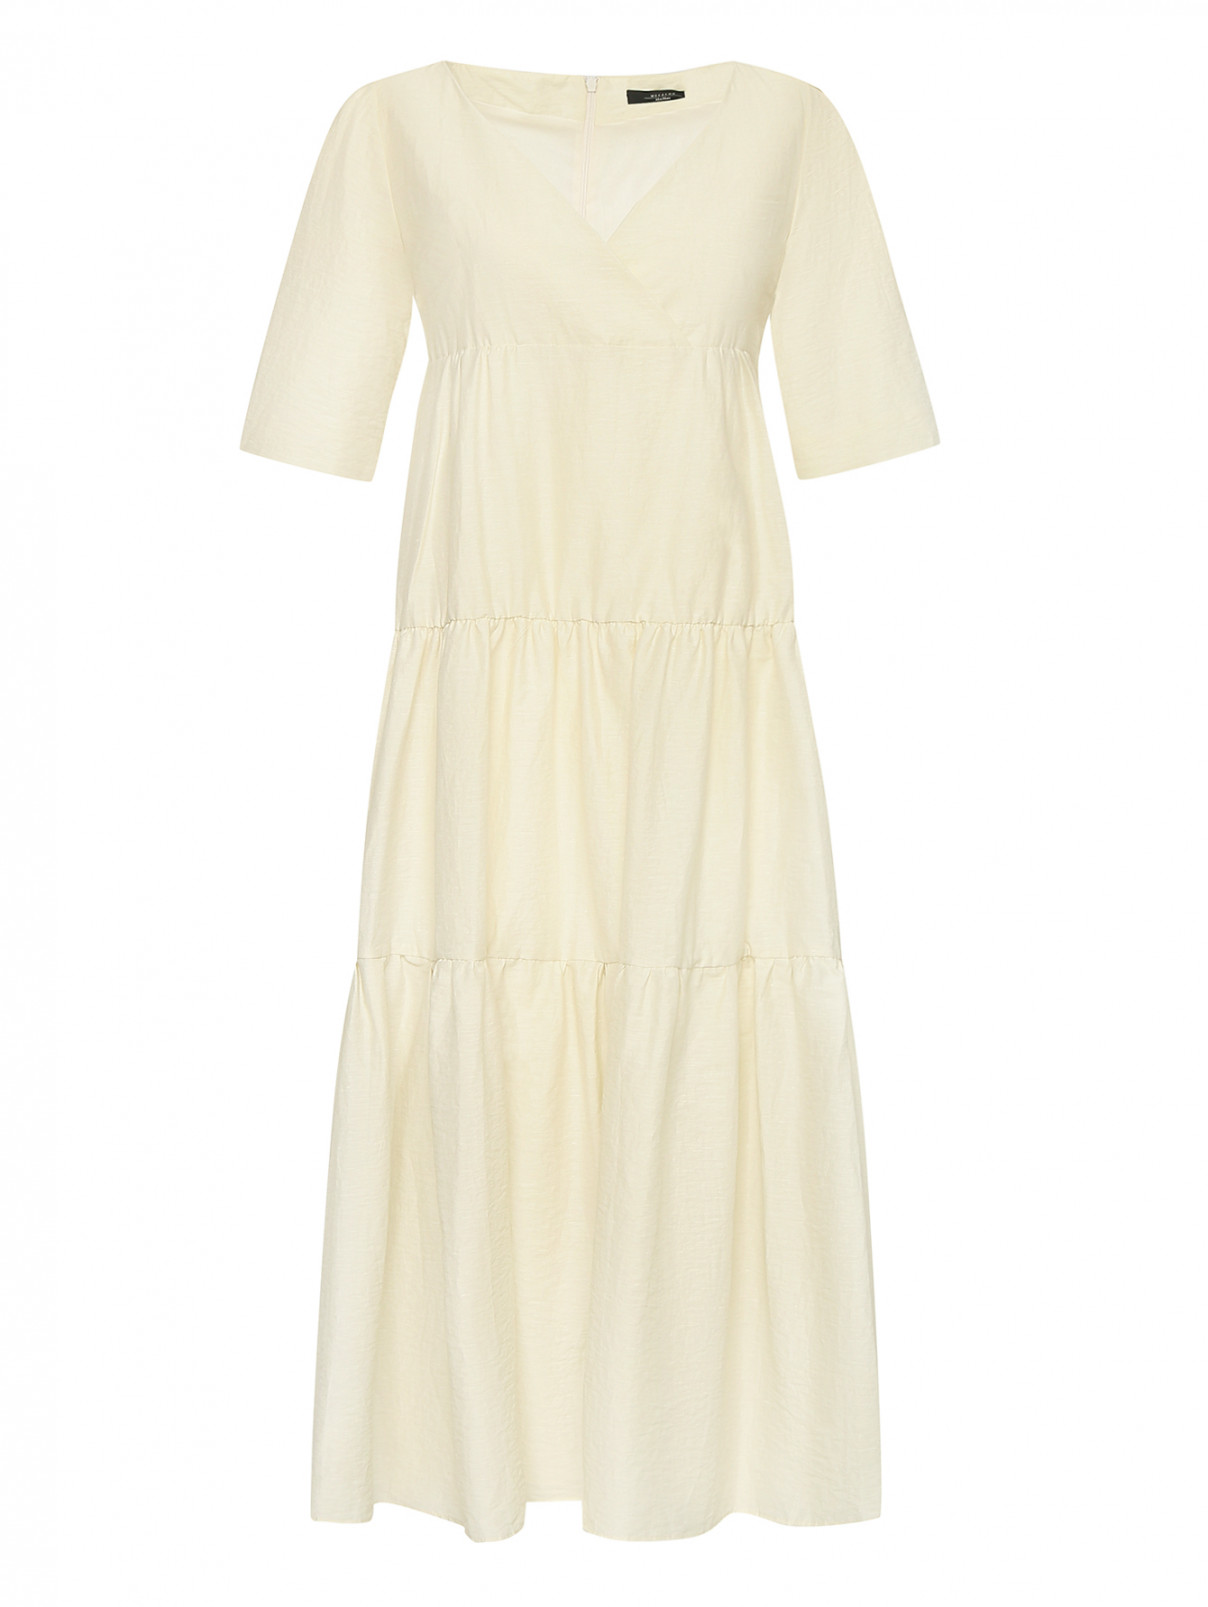 Платье-миди из льна и хлопка с короткими рукавами Weekend Max Mara  –  Общий вид  – Цвет:  Бежевый